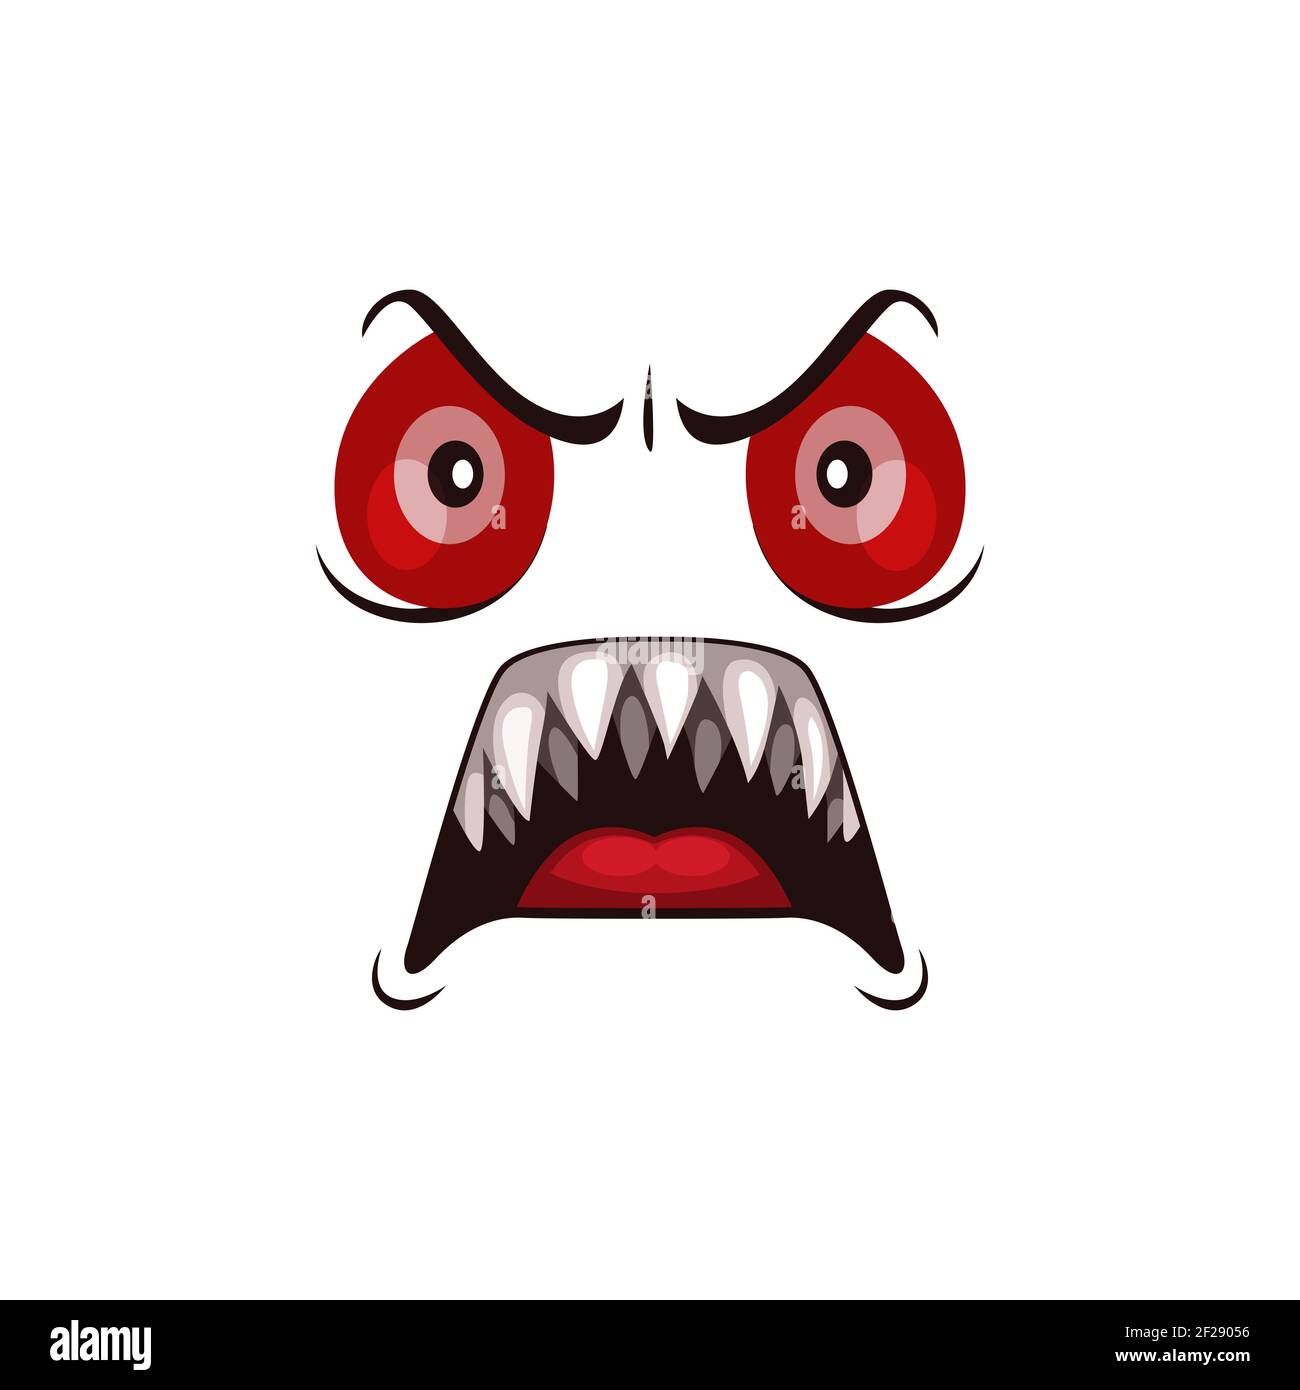 Icône de vecteur de dessin animé de visage de monstre, fantôme d'Halloween, émotion de créature créepy avec les yeux rouges en colère et la bouche roar avec de longues dents acérées. Emoj effrayant extraterrestre Illustration de Vecteur